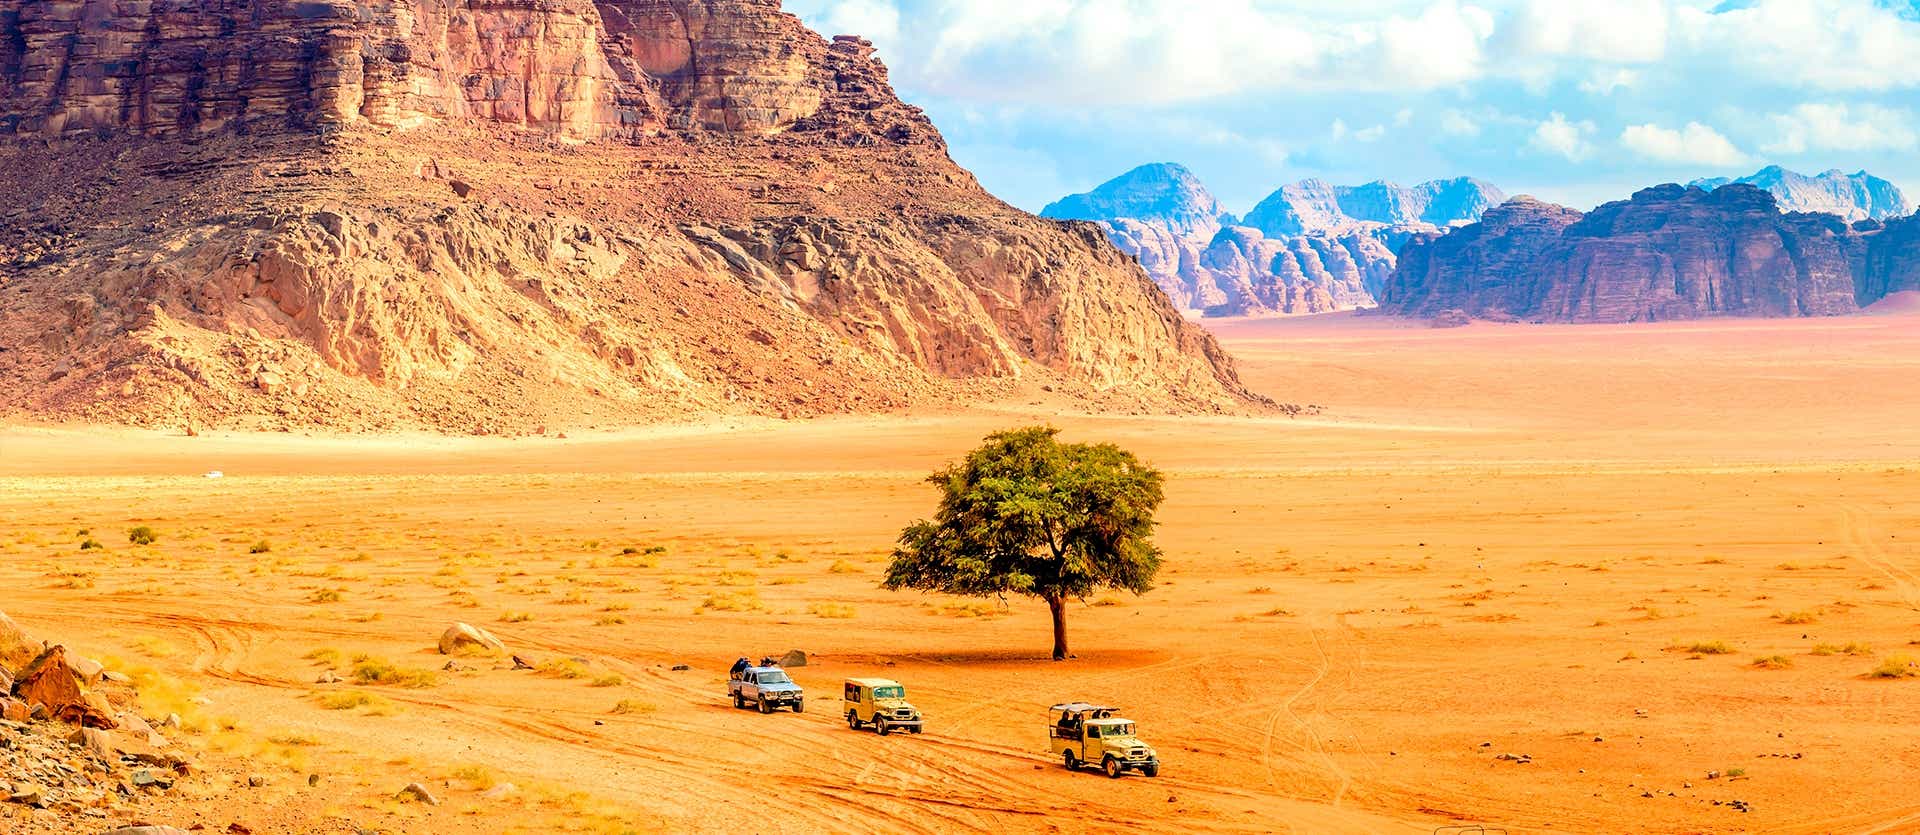 Wadi Rum Desert <span class="iconos separador"></span> Jordan